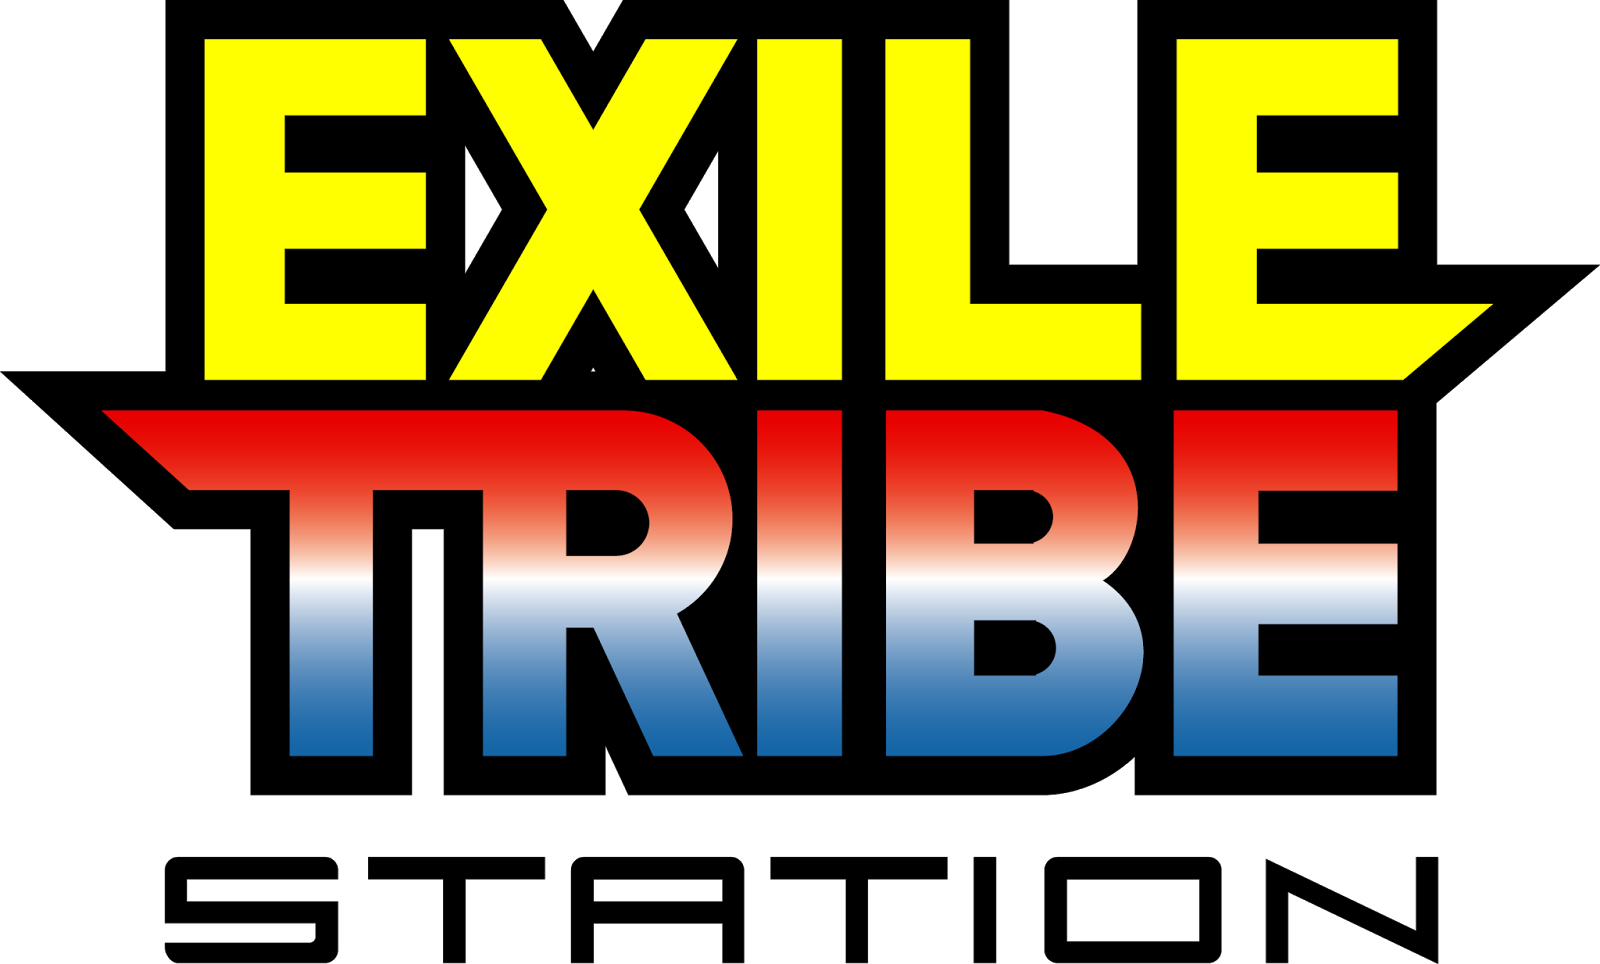 Logodol 全てが高画質 背景透過なアーティストのロゴをお届けするブログ Exile Tribe Station の高画質ロゴ